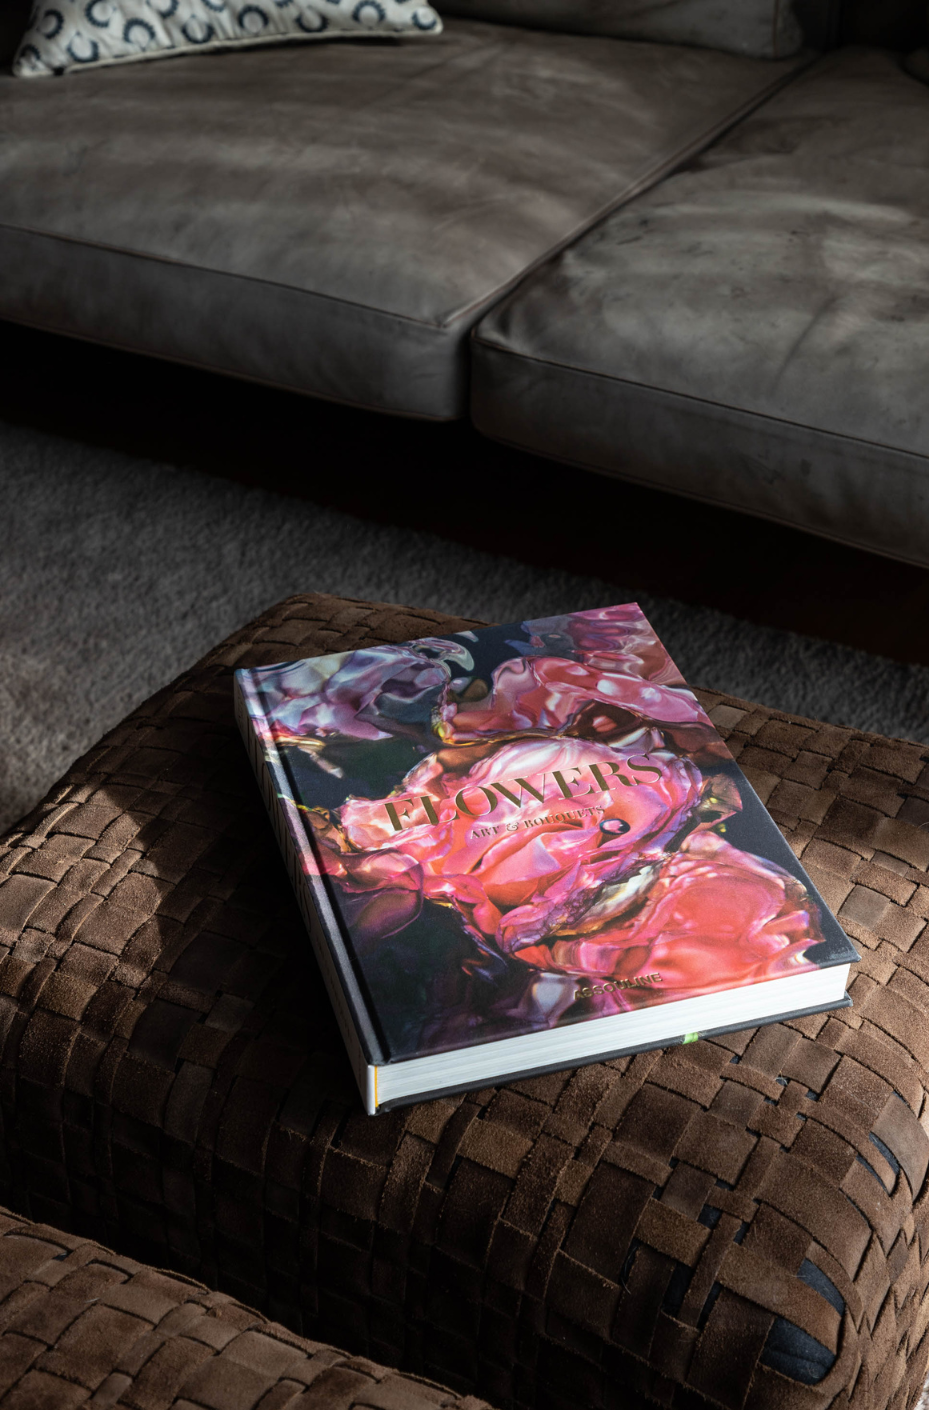 Flowers Bildband von Assouline bei den Things we Love von Martina Göbl